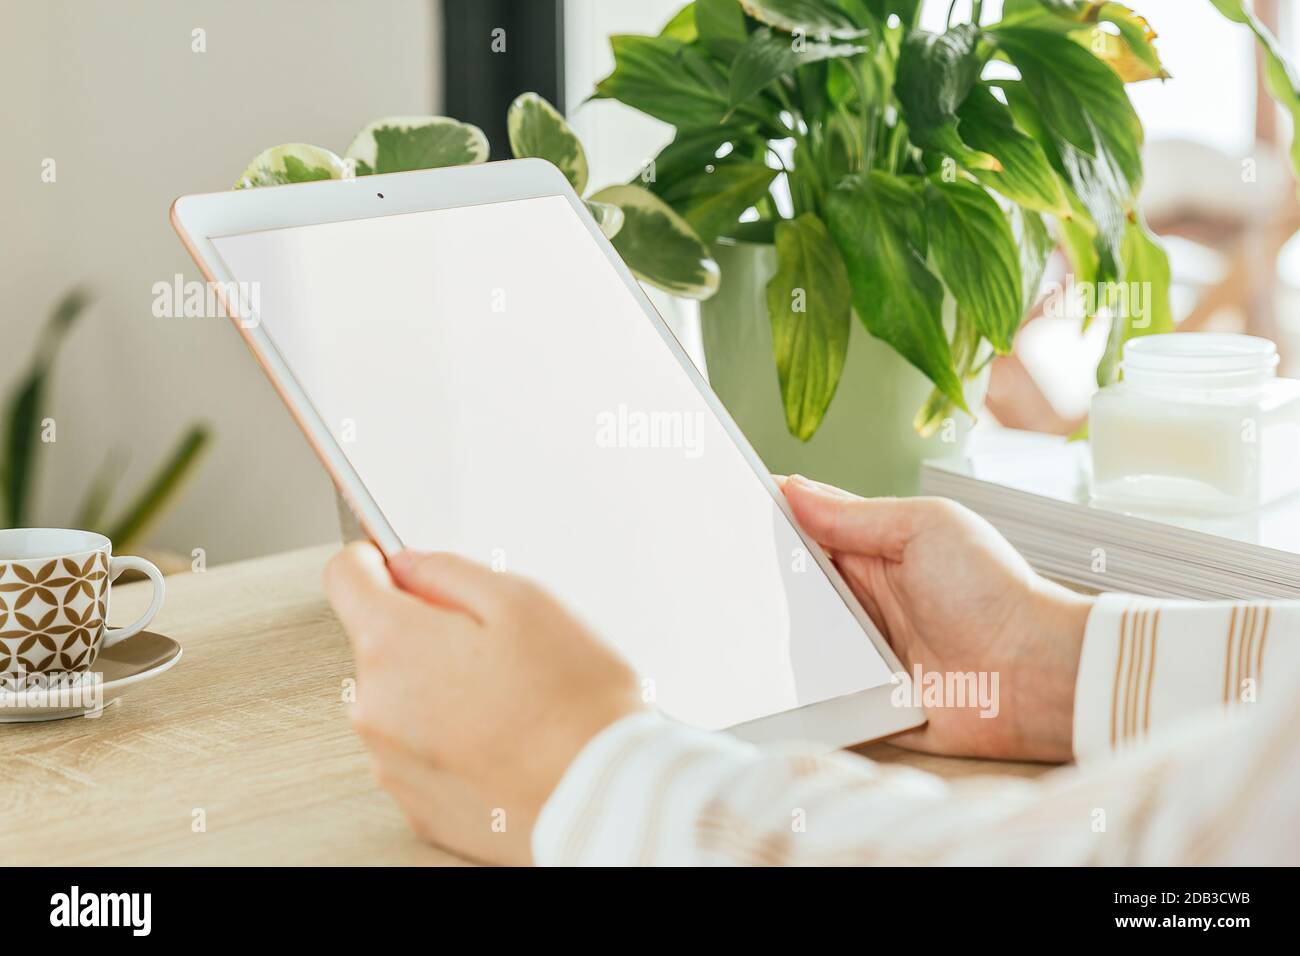 Tablet bianco schermo mockup tenuto da una mano di una donna che è in soggiorno. Schermo vuoto per inserire il progetto. Foto Stock